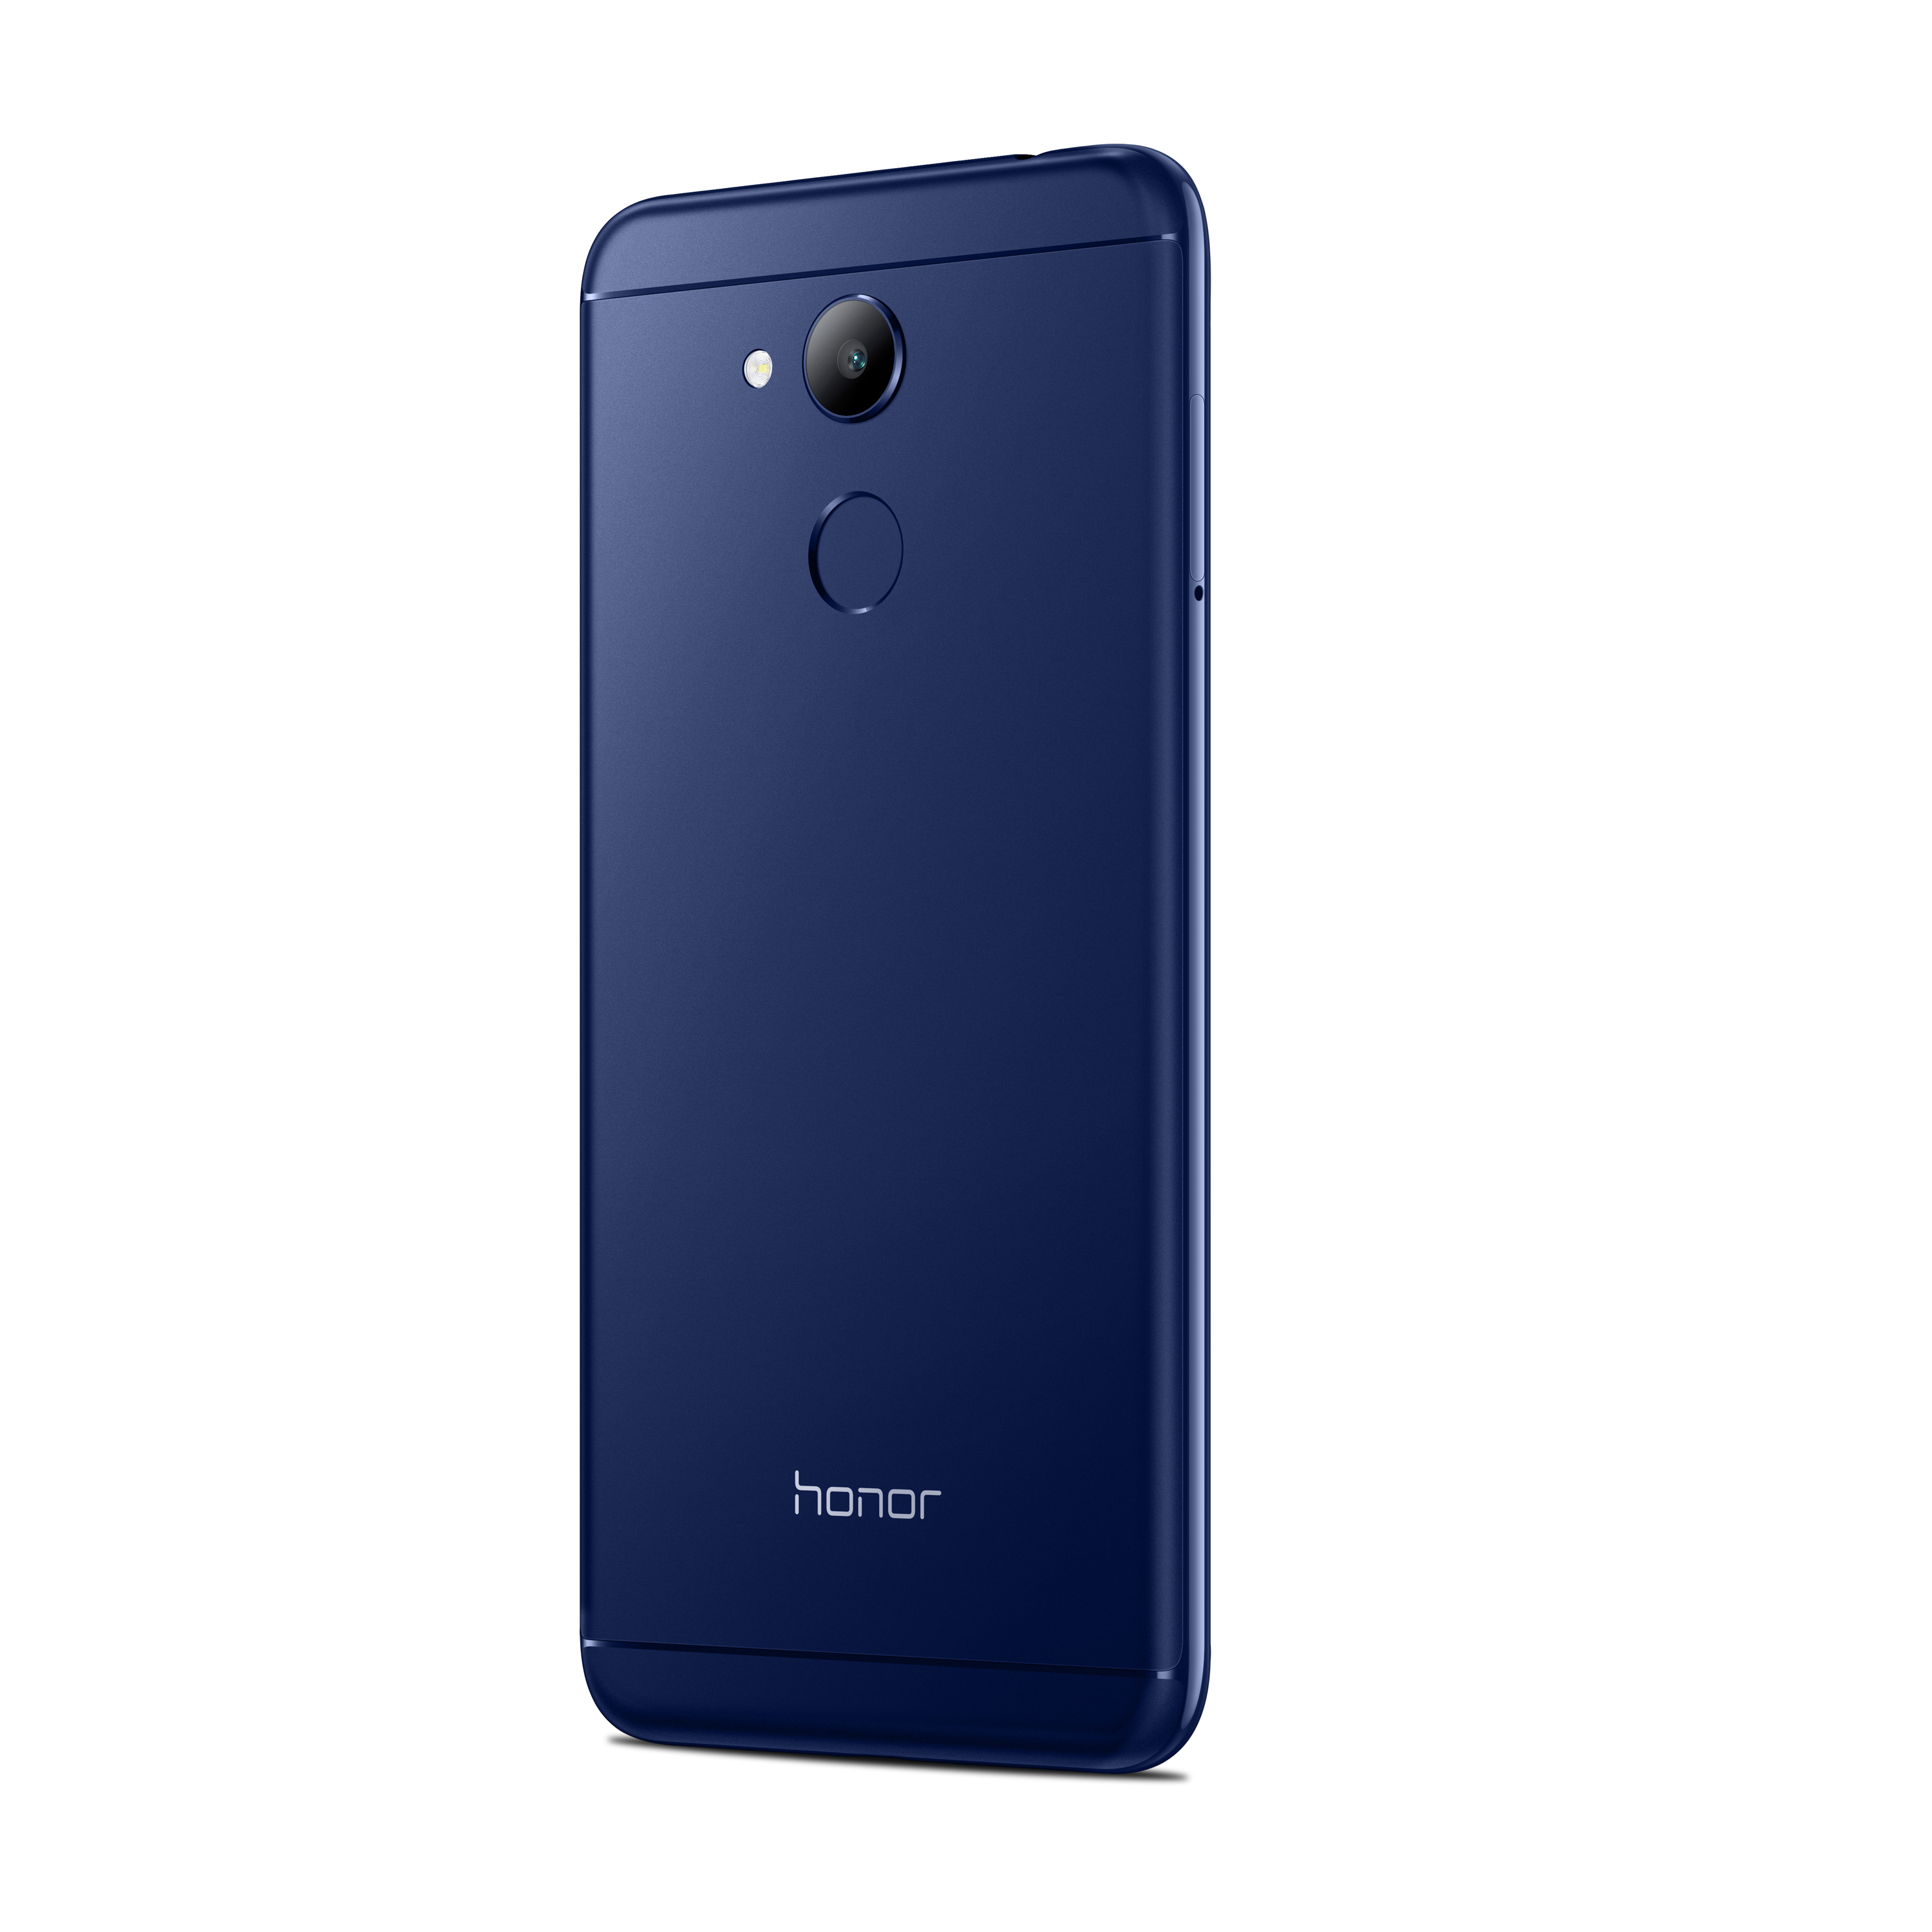 Honor c pro. Хонор 6c. Huawei Honor 6c Pro. Смартфон Honor 6c Pro. Huawei Honor 6c Pro JMM-l22.